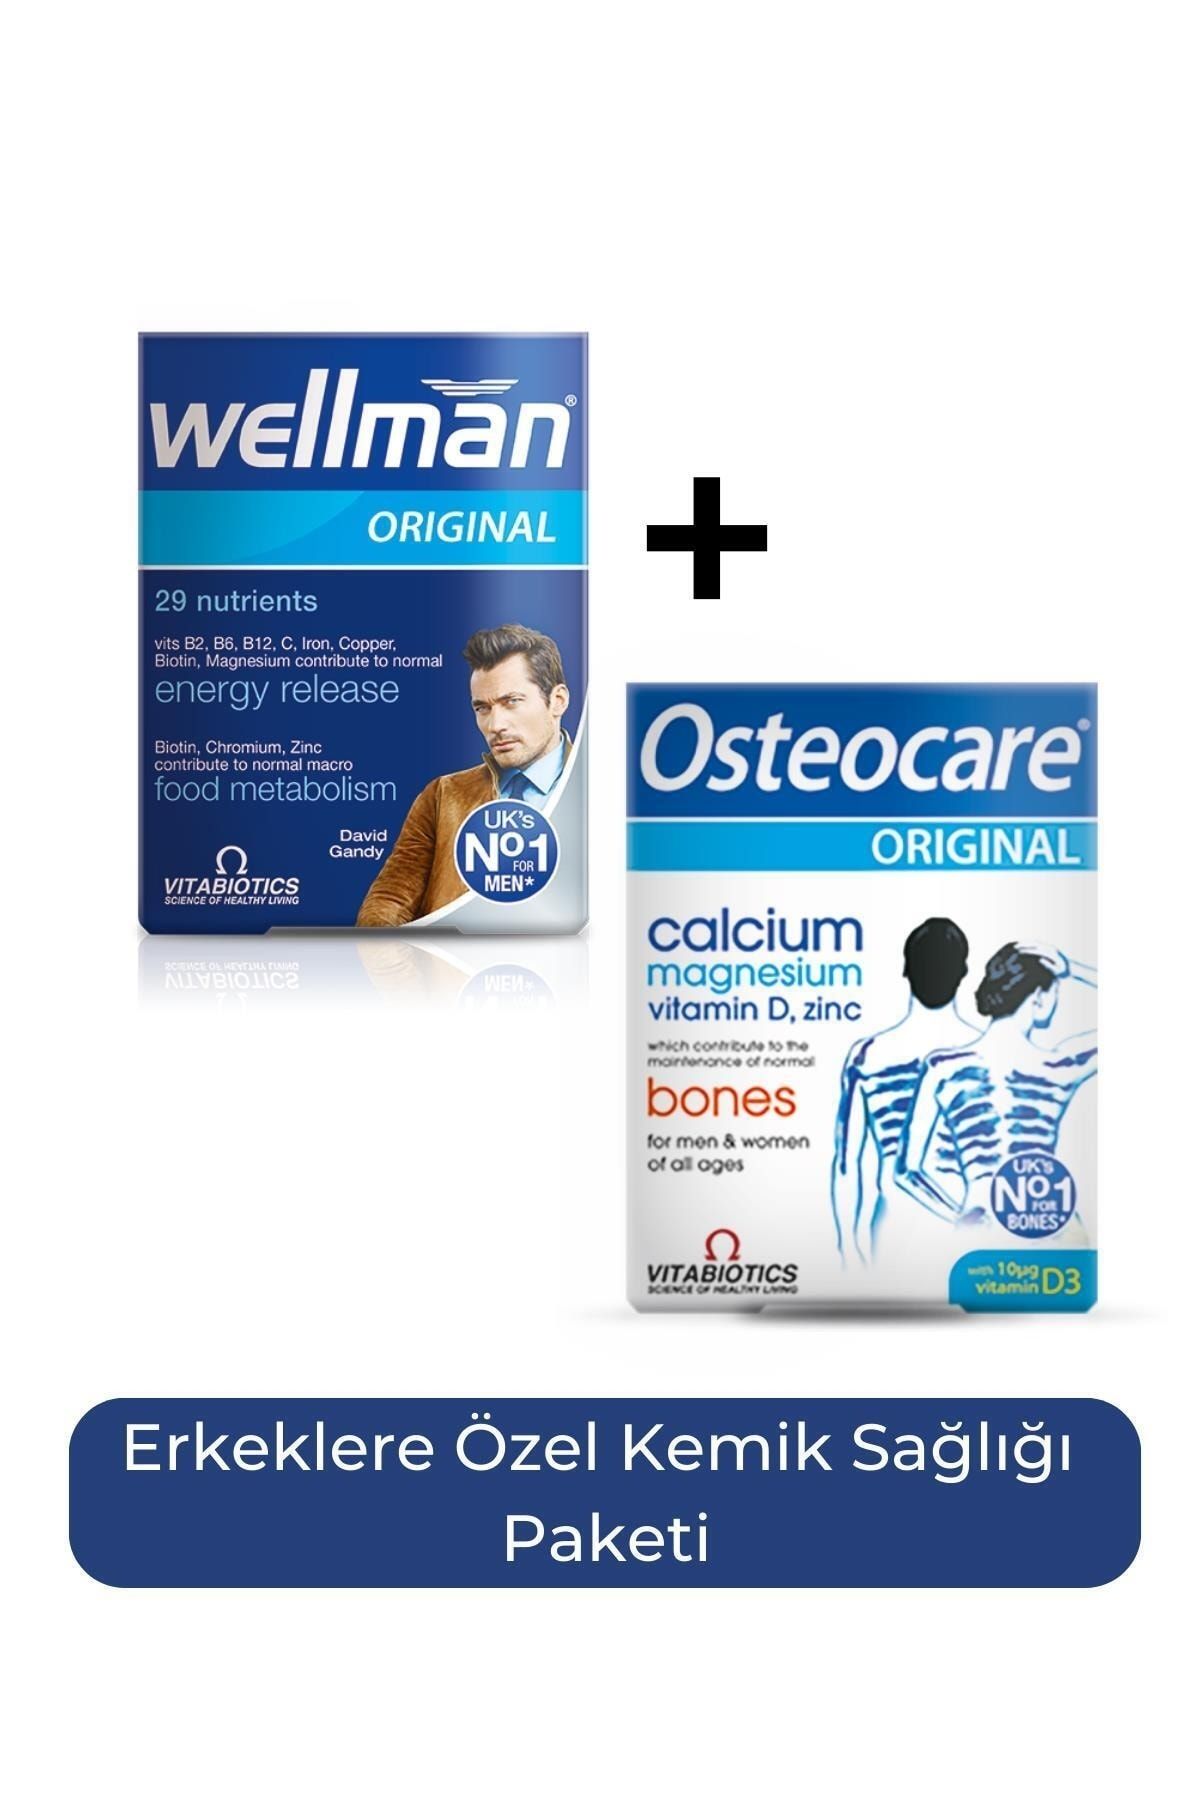 Wellman Original 30 Tablet Osteocare Original 30 Tablet Erkeklere Özel Kemik Sağlığı Paketi